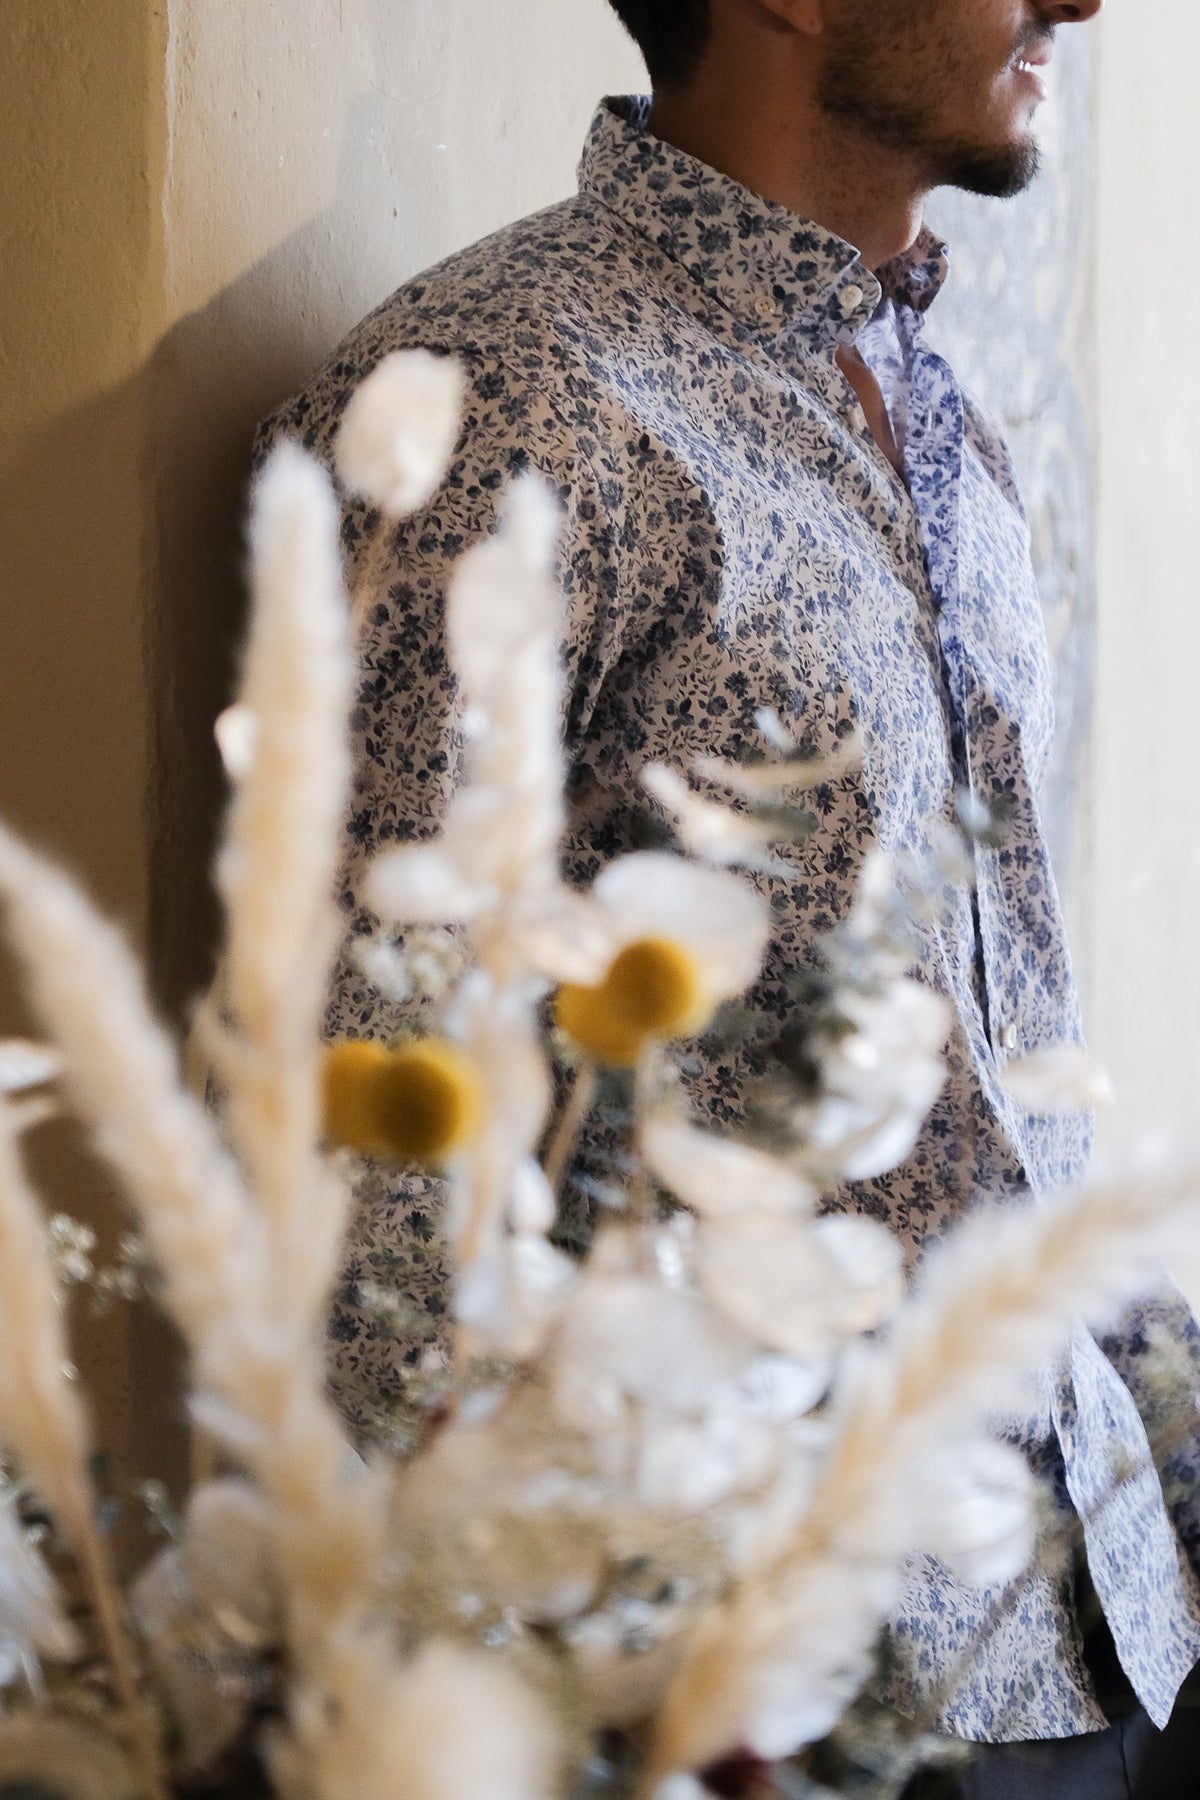 Chemise de loisir imprimée avec motif floral en blanc/bleu (art. 2104-C)